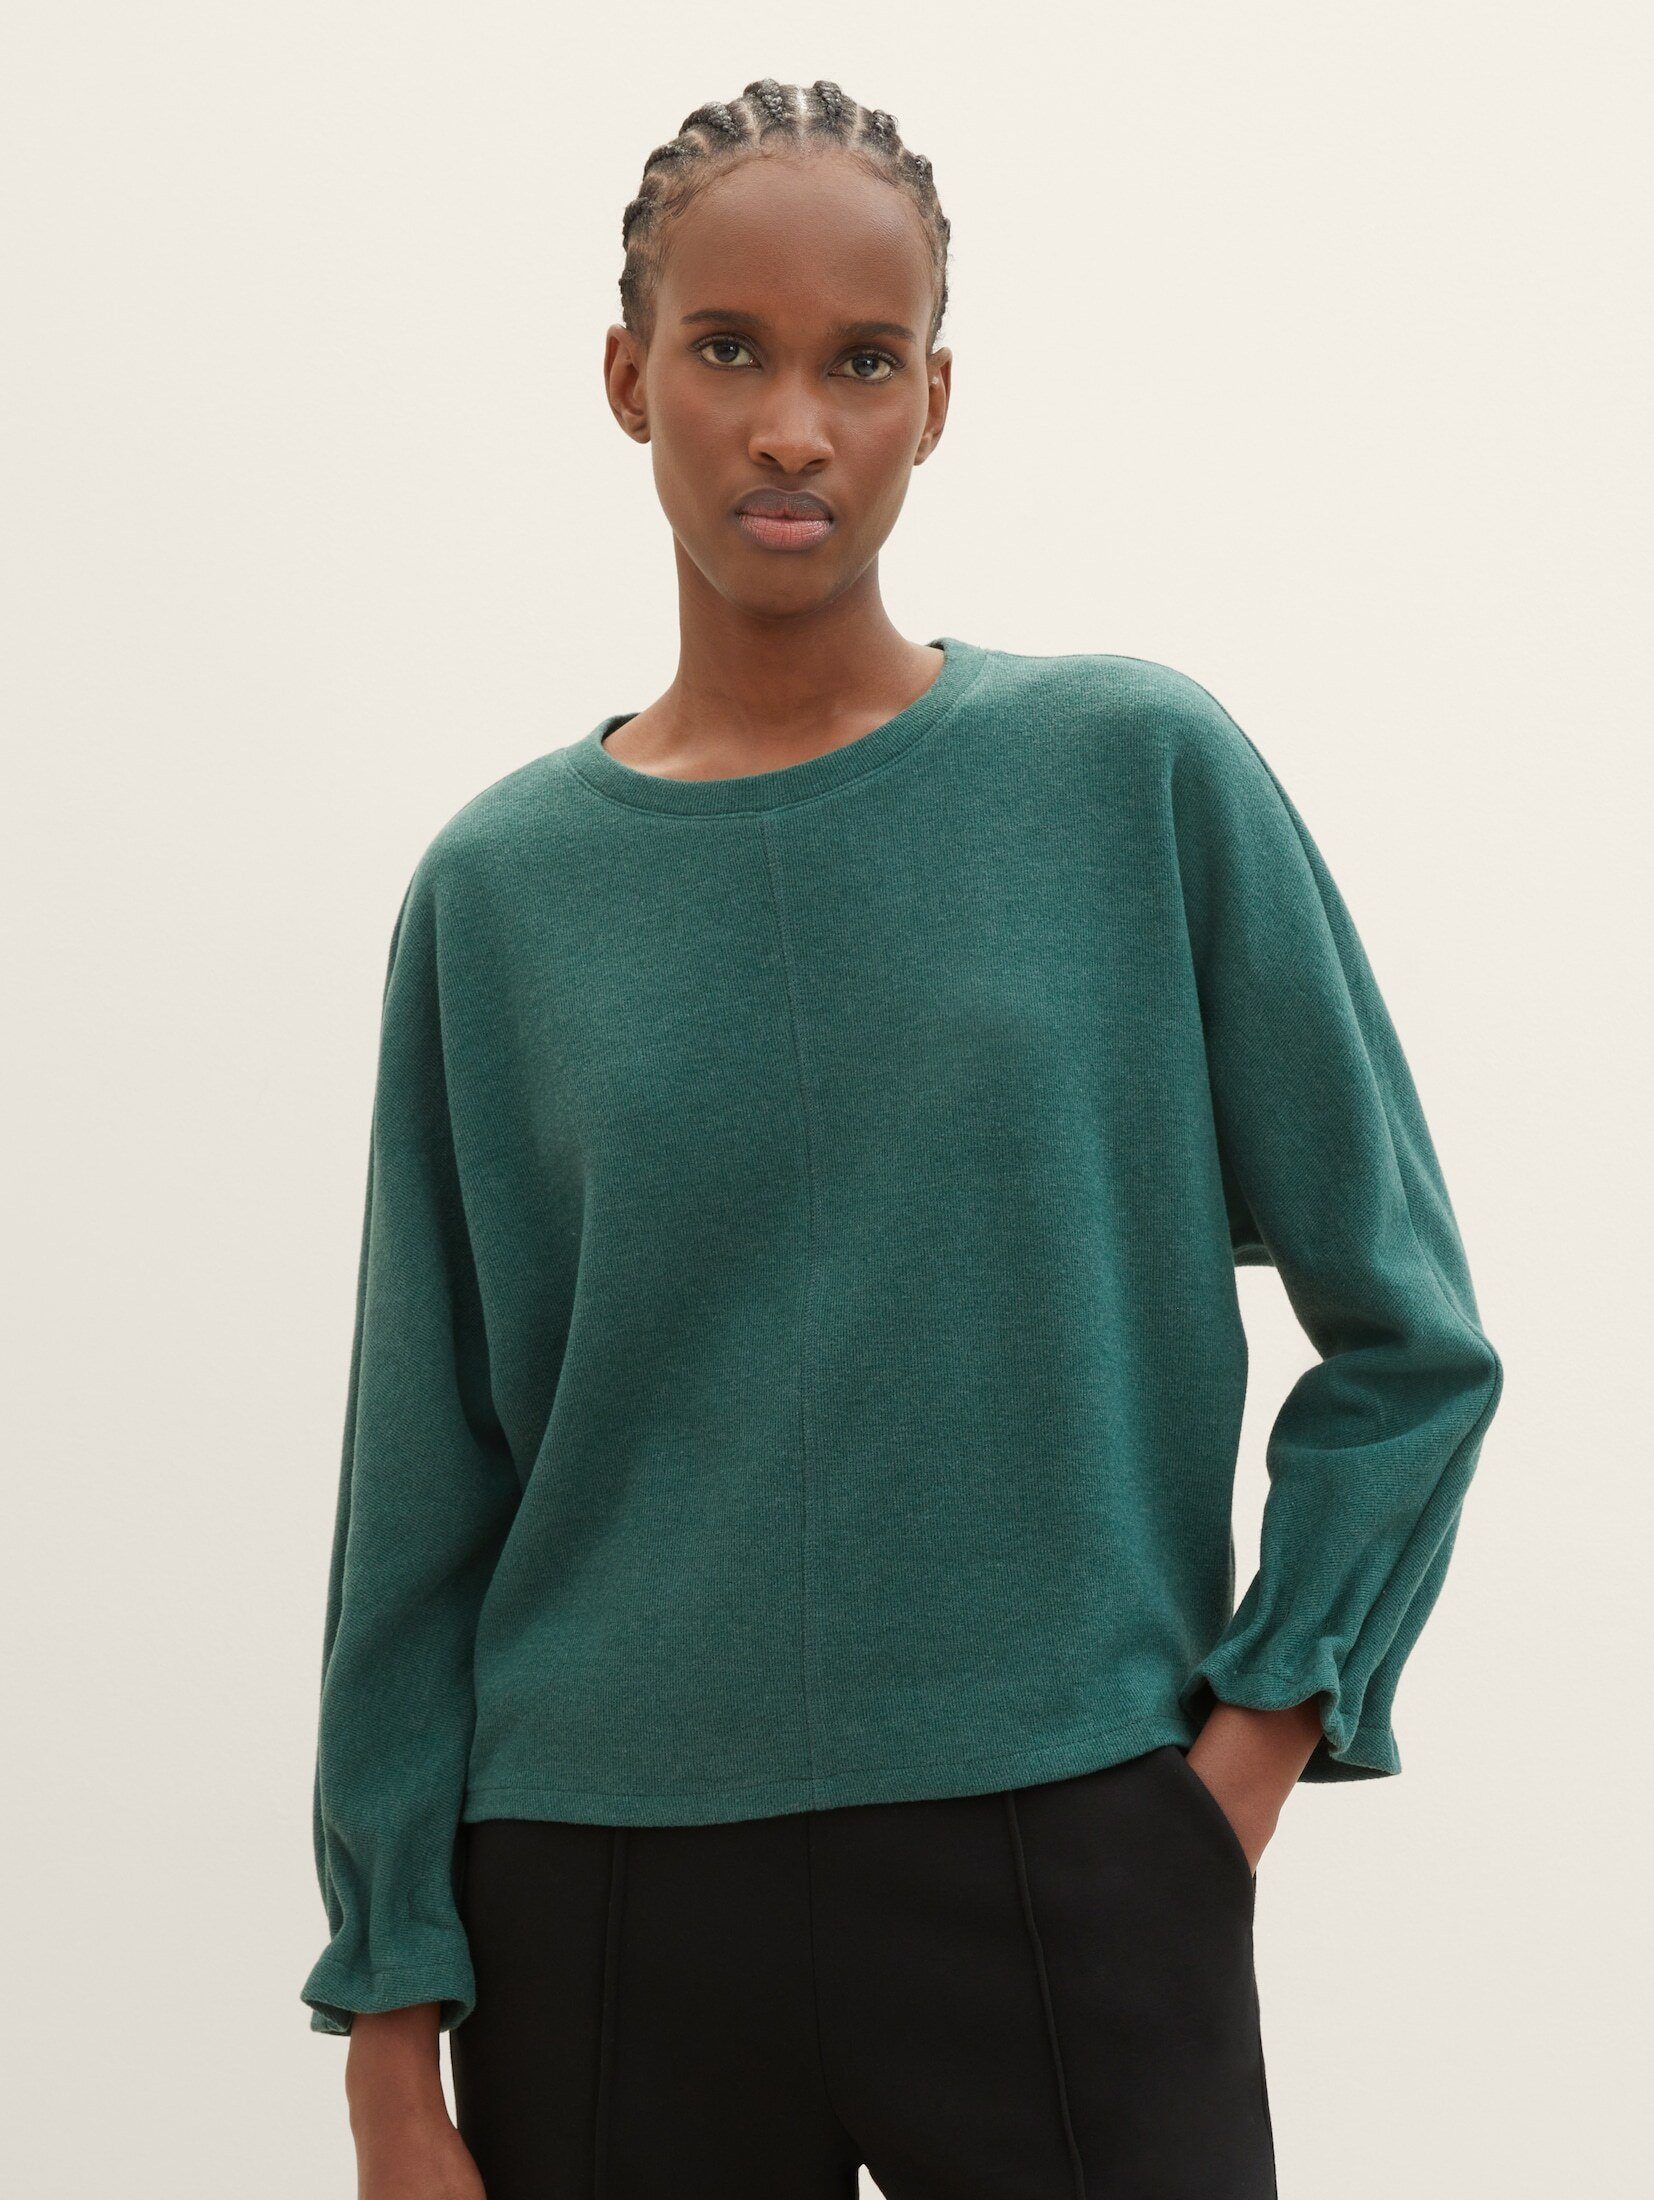 TAILOR mit Sweater TOM Denim dust Sweatshirt green melange Fledermausärmeln